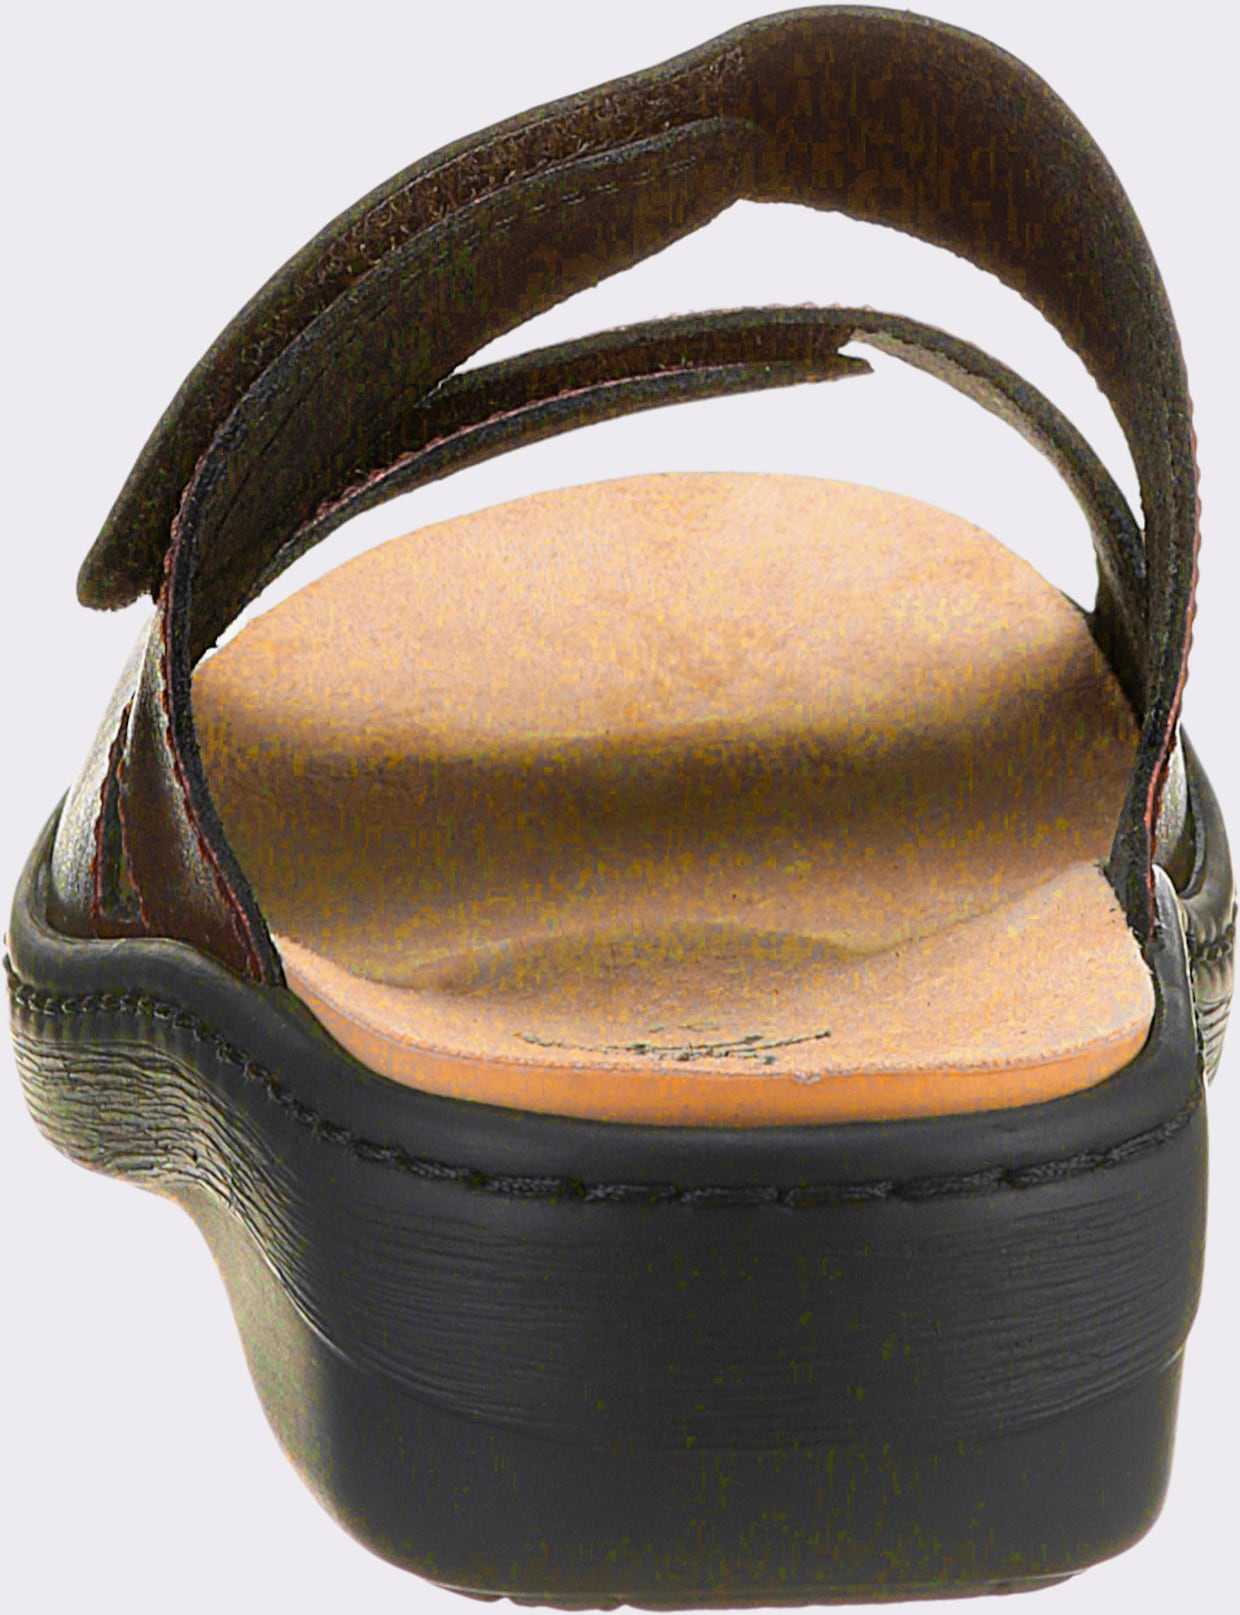 airsoft comfort+ slippers - bronskleurig